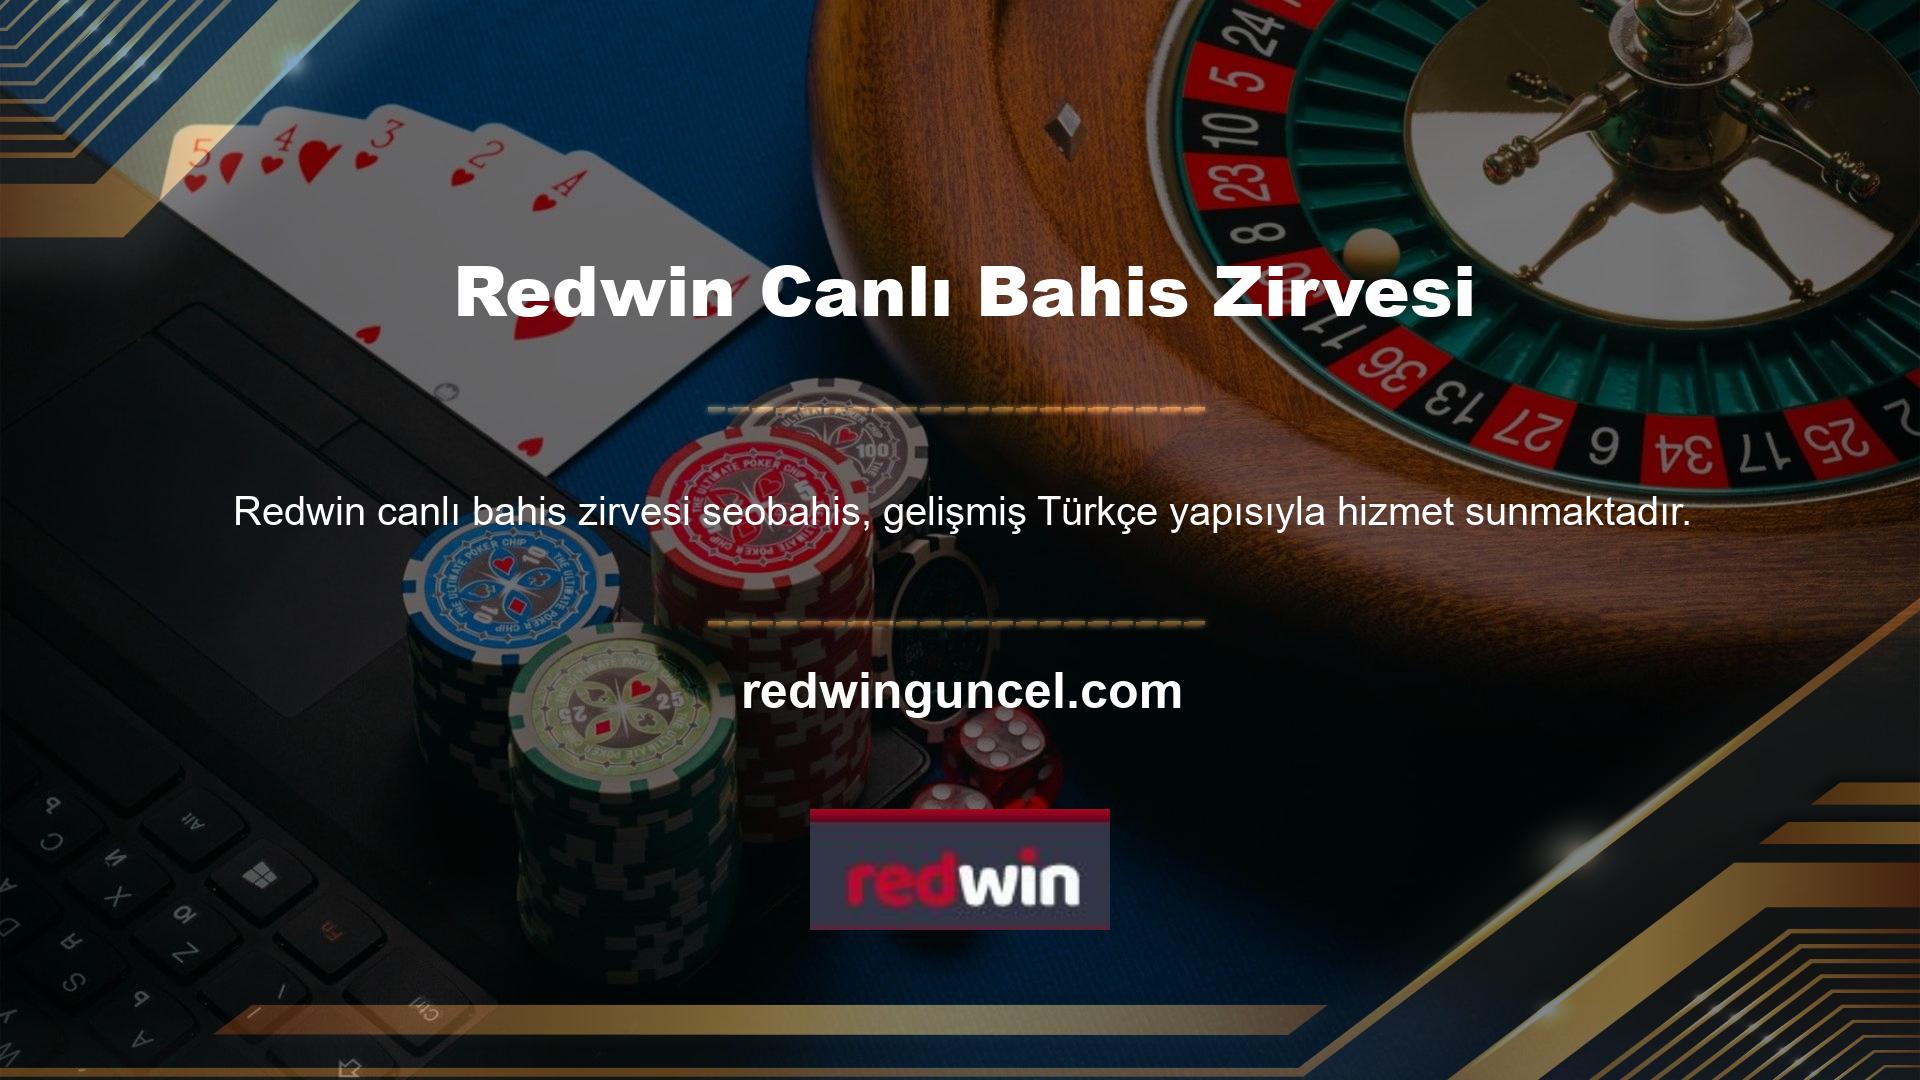 Redwin yeni reklamların zaman zaman arızalanması yaygındır